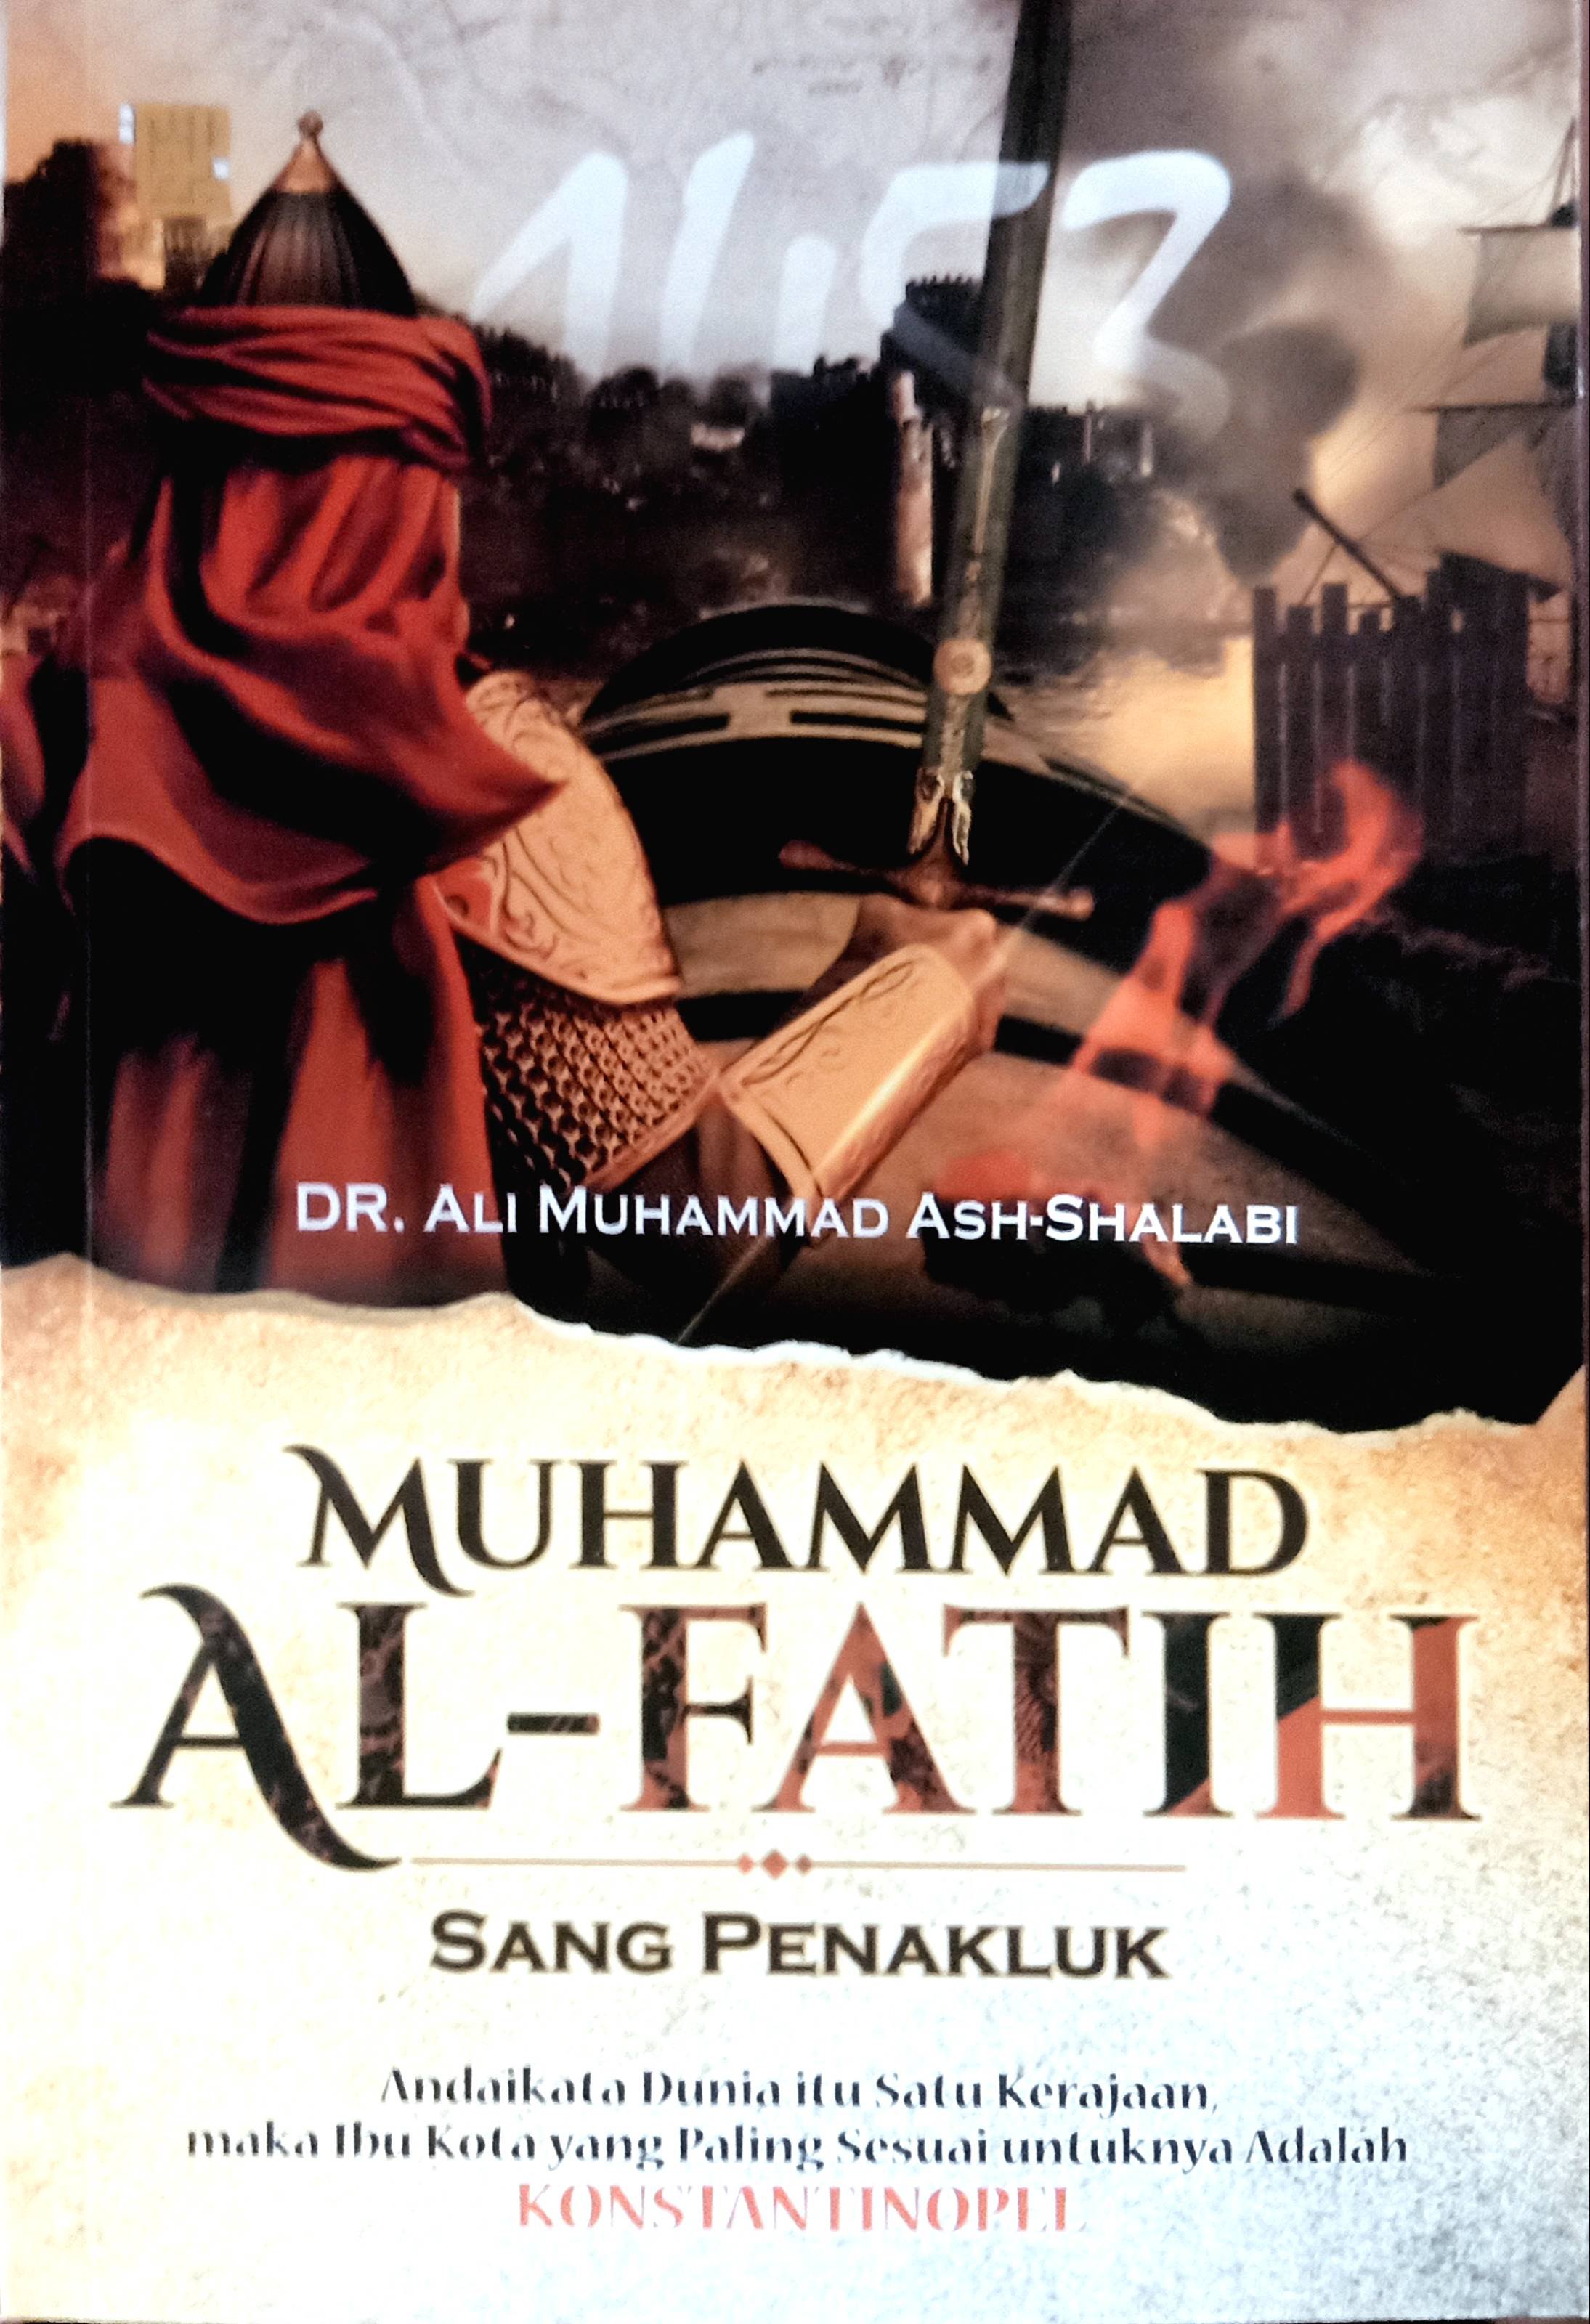 Muhammad al-fatih sang penakluk